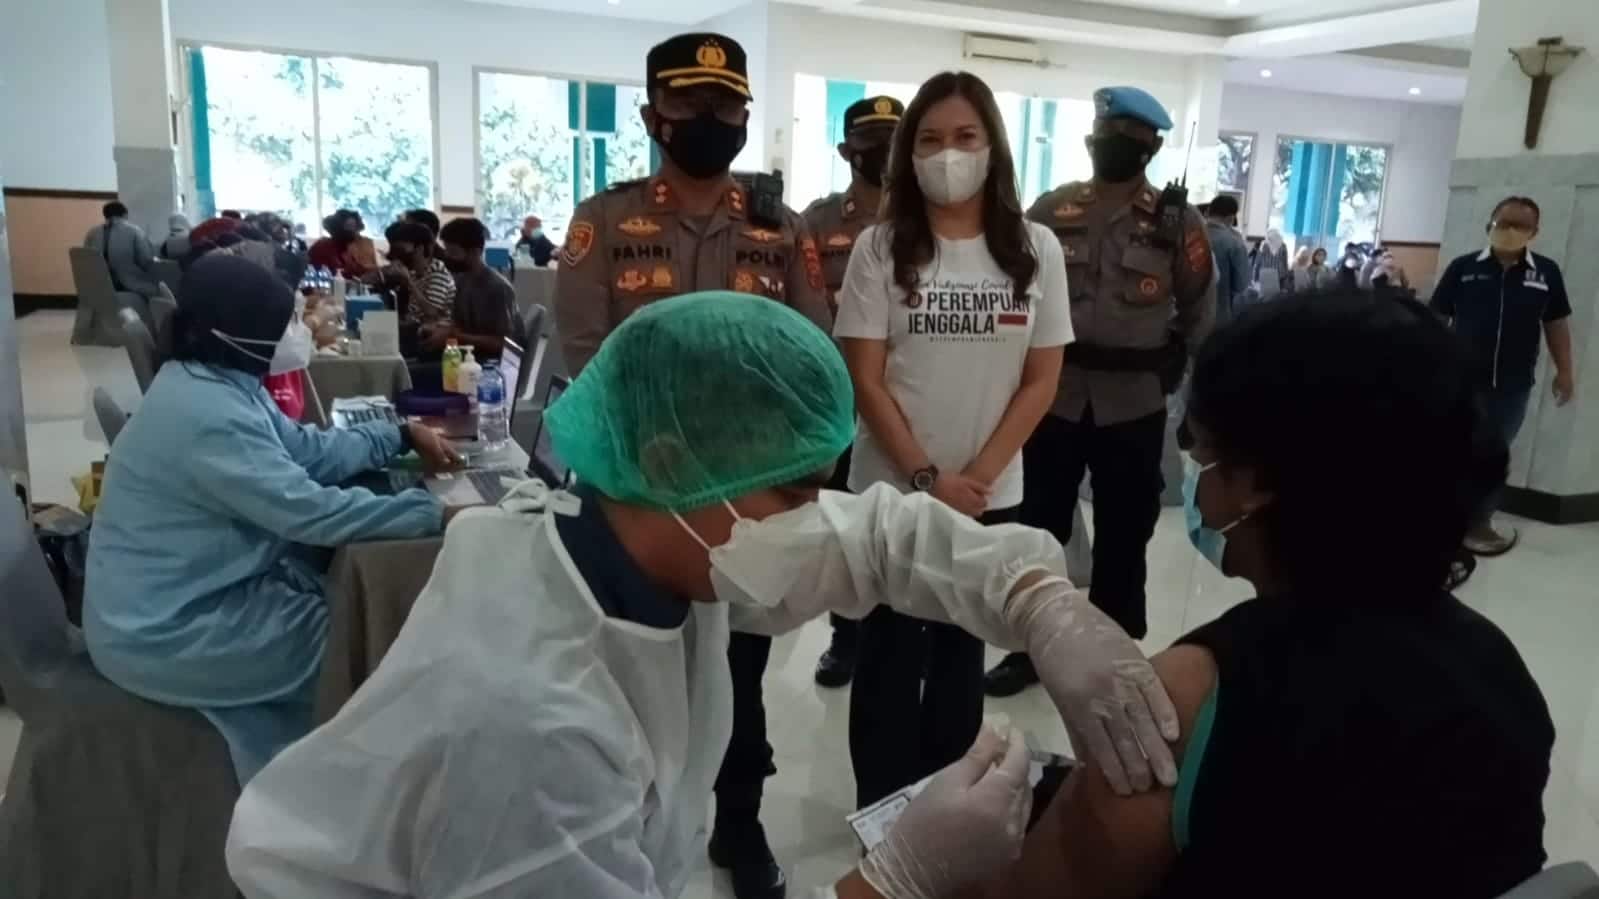 Perempuan Jenggala Vaksinasi Covid-19 sampai 15 Ribu Dosis di Cirebon